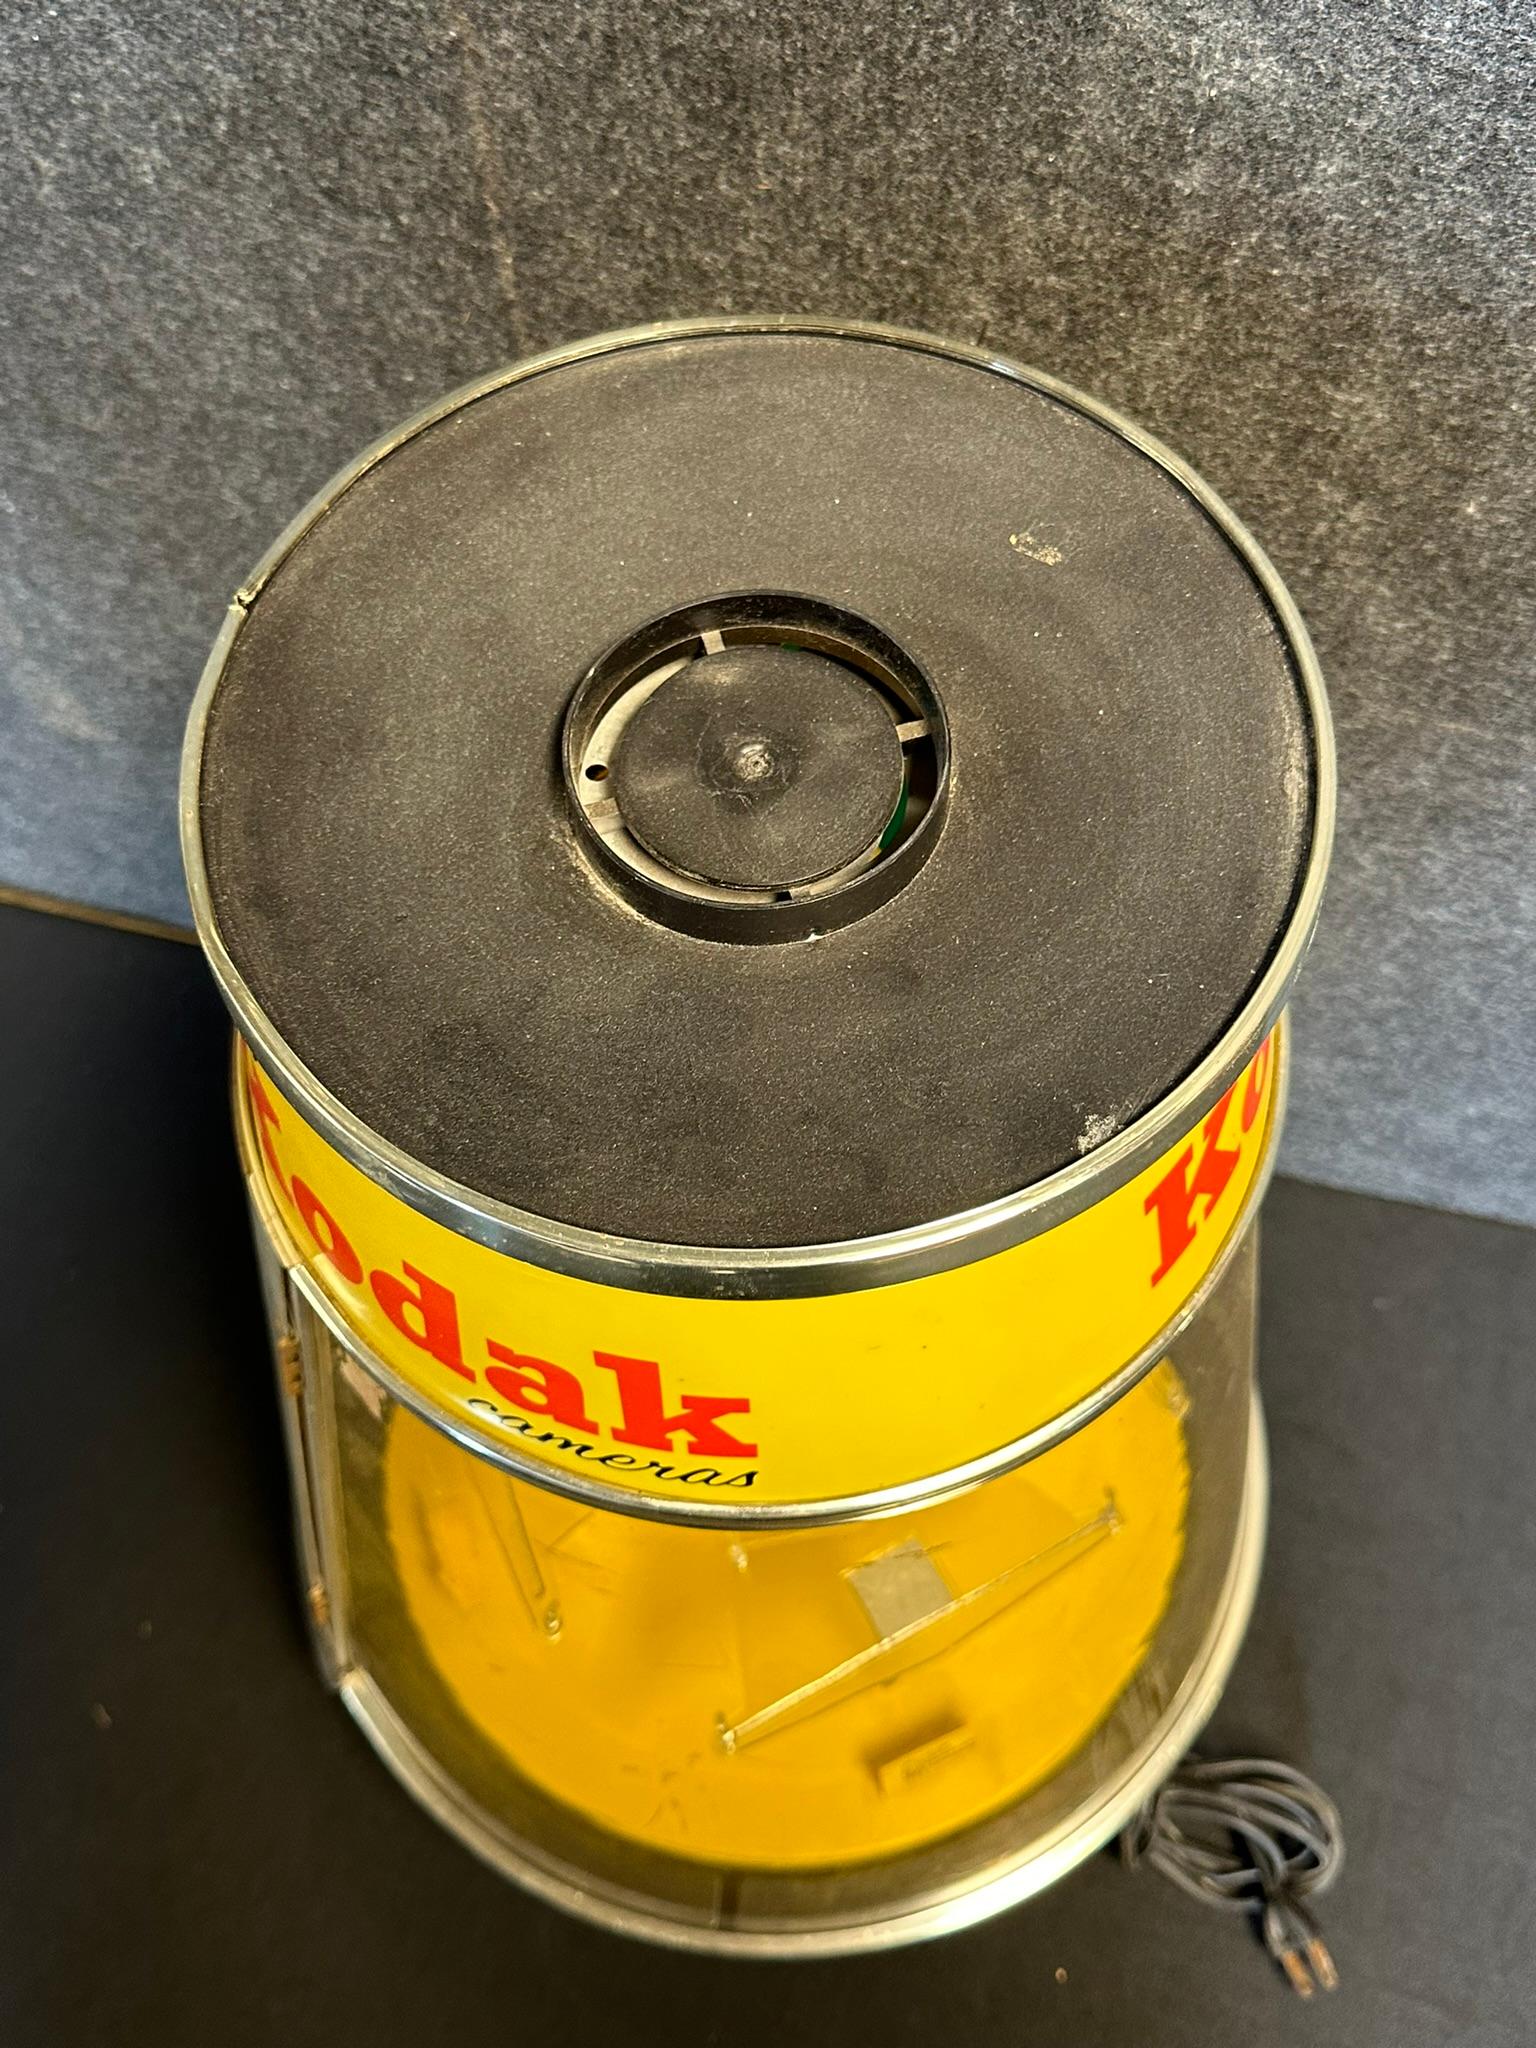 Kodak Instapocket Cameras Plastic 1960s Revolving Advertising Store Display